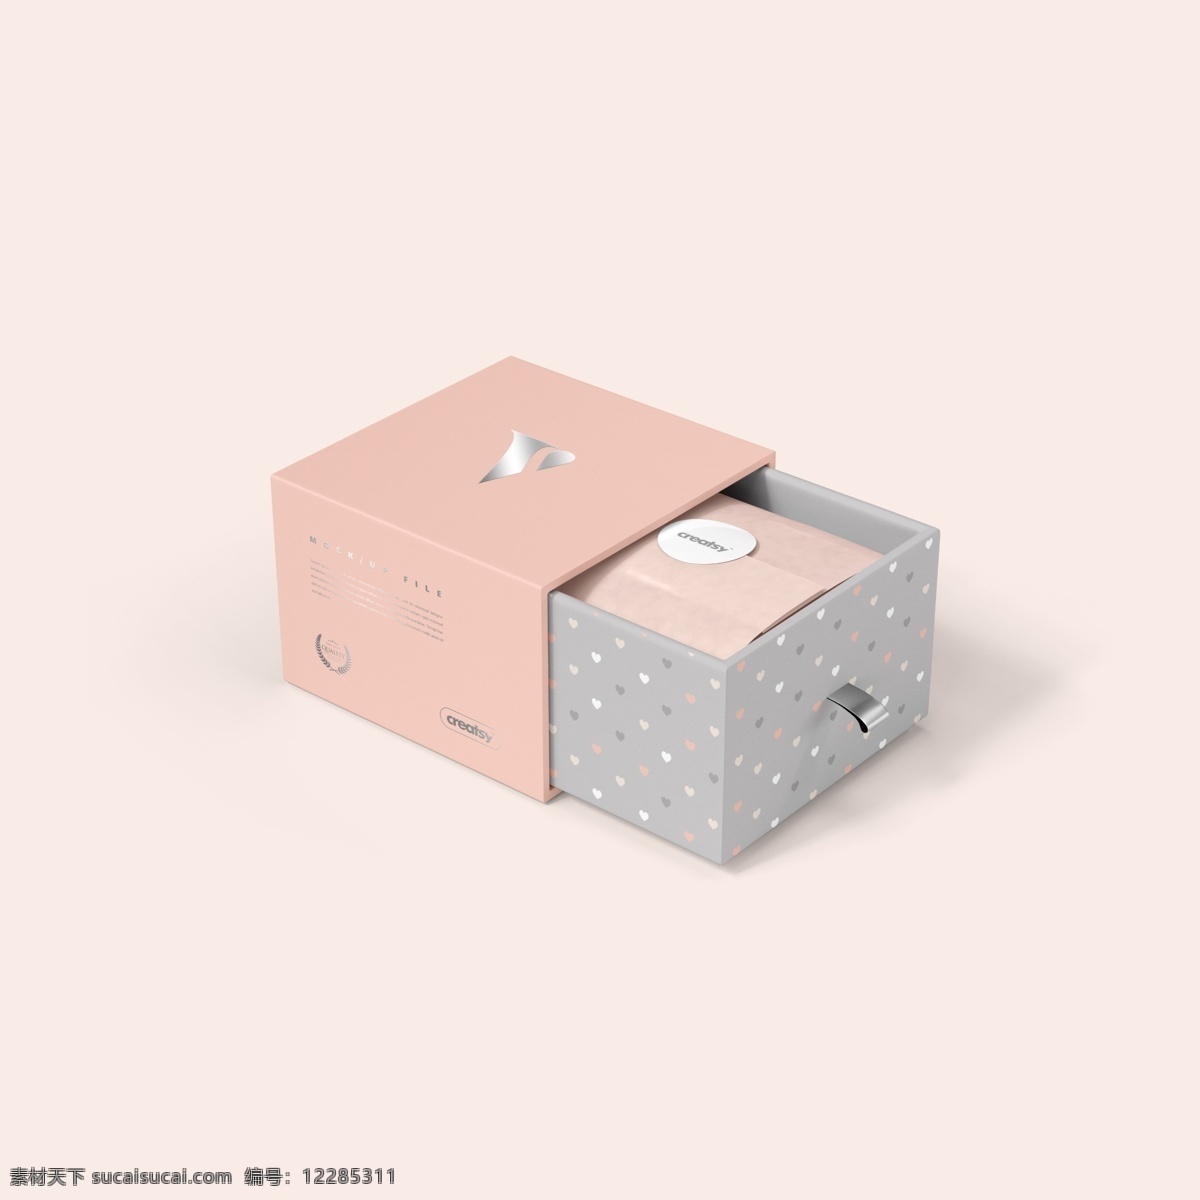 礼盒包装样机 礼物盒包装 饰品包装盒 海参礼盒包装 海参礼盒 包装 硬纸盒 硬包装纸盒 手提饰品盒 vi设计